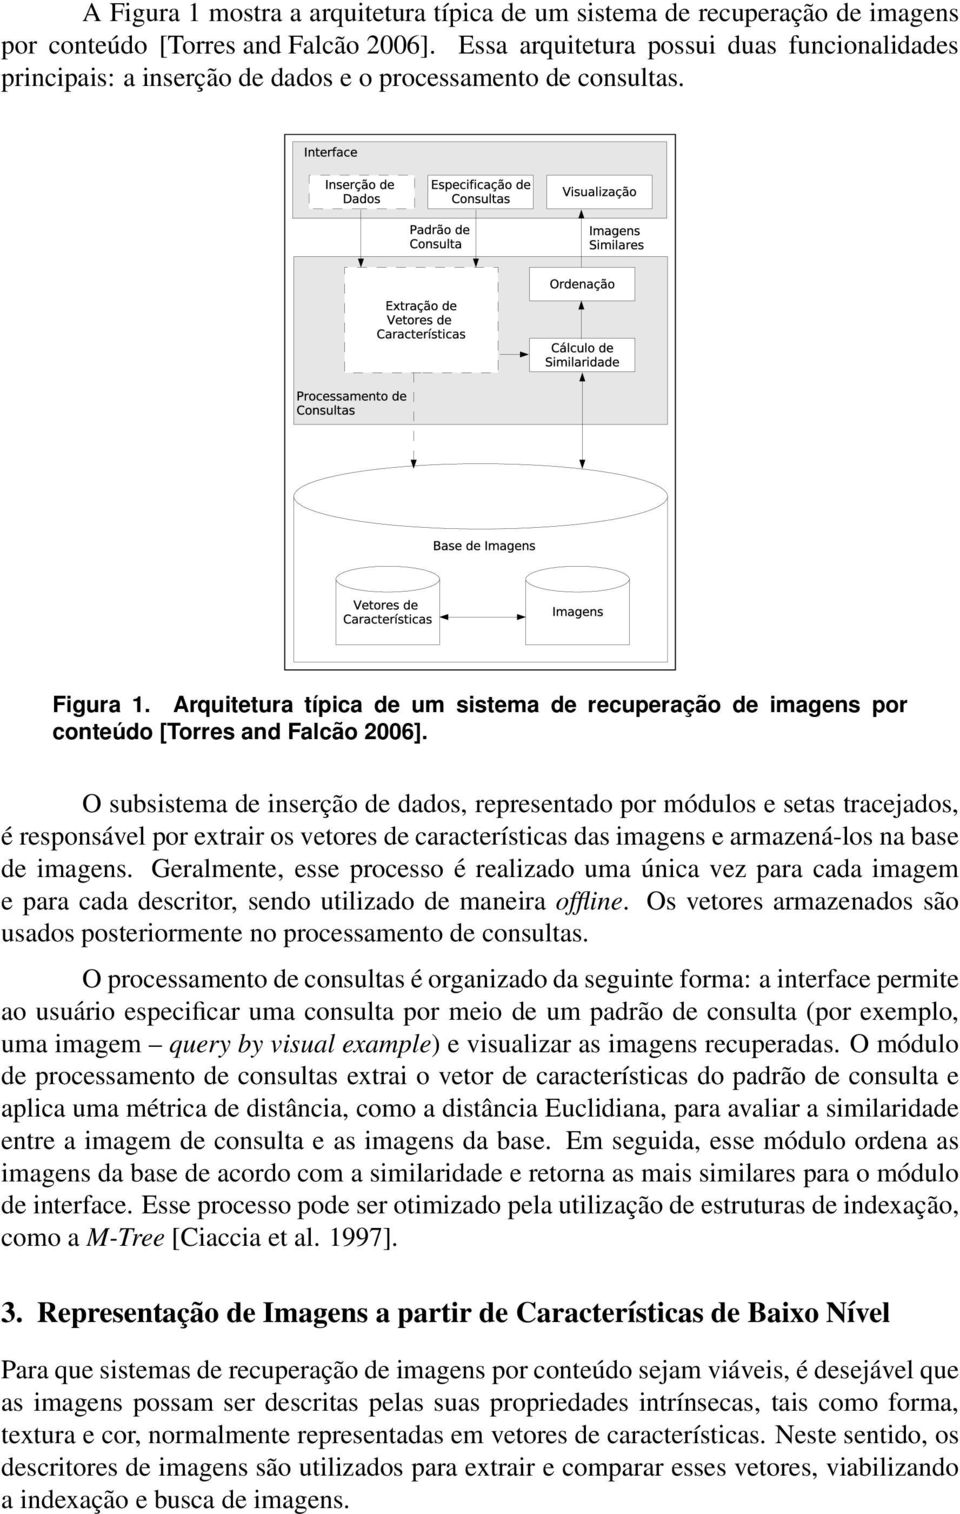 Arquitetura típica de um sistema de recuperação de imagens por conteúdo [Torres and Falcão 2006].